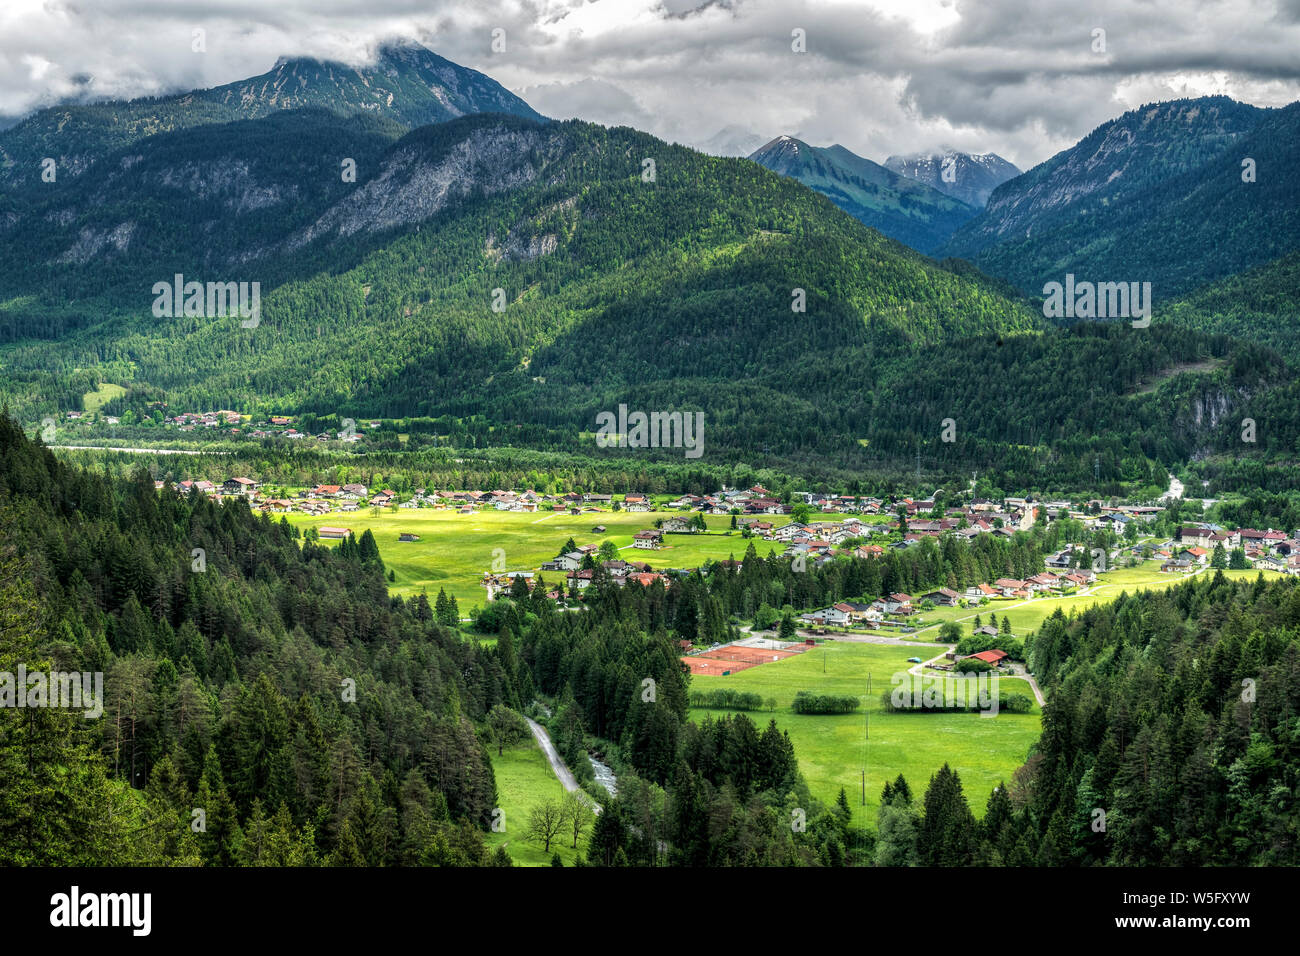 Austria, Tirolo, Lechtal, Naturpark Tiroler Lech, Weissenbach am Lech è situato in corrispondenza della giunzione della Lechtal e Valli Tannheimer Foto Stock